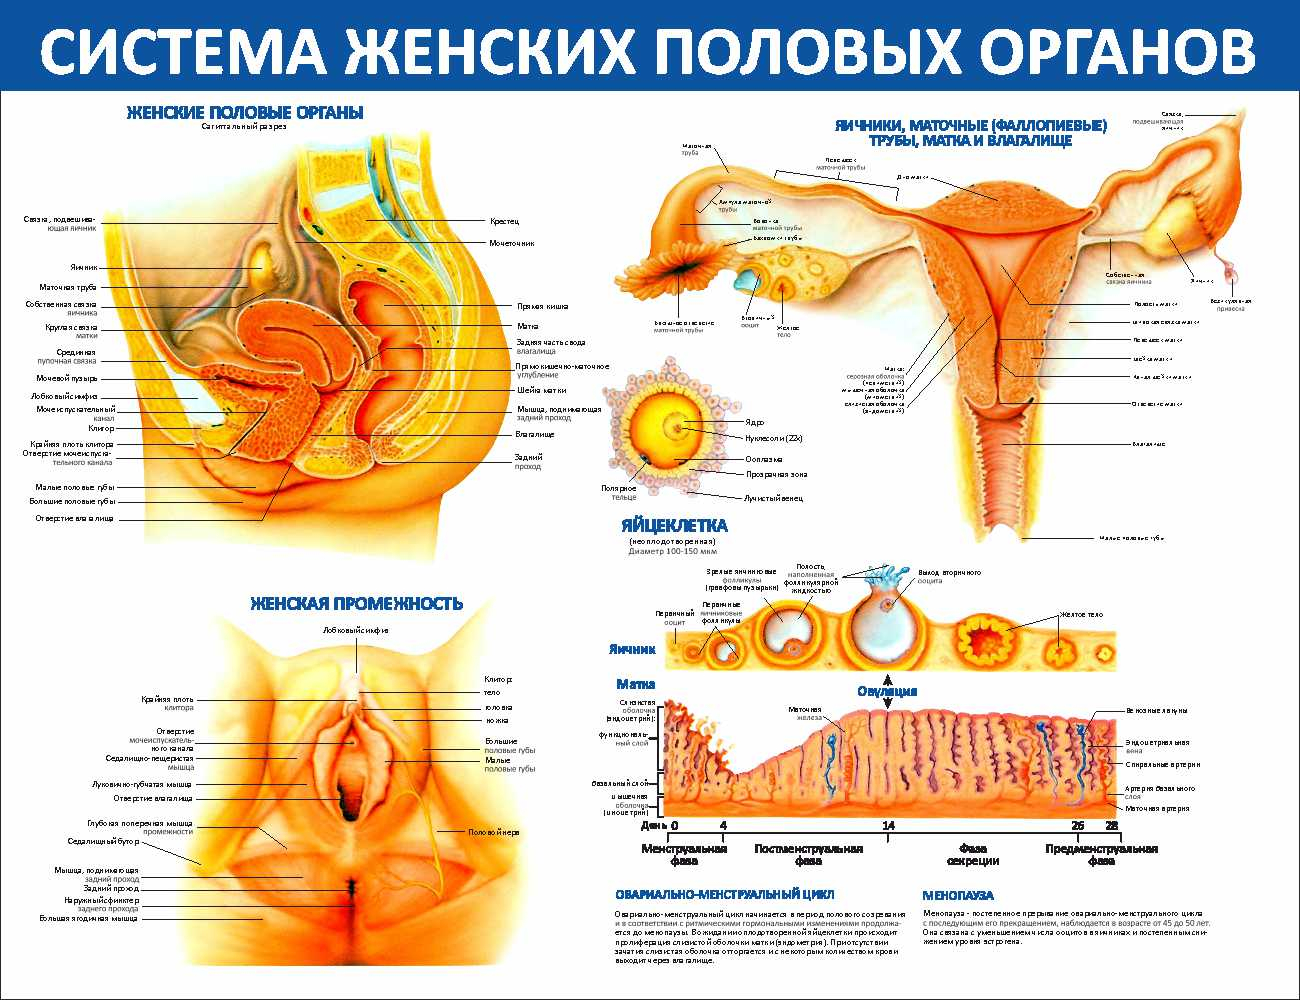 Особенности женской половой системы. Органы женской половой системы. Анатомия женской половой системы. Анатомия женского полового органа. Схема женской репродуктивной системы.